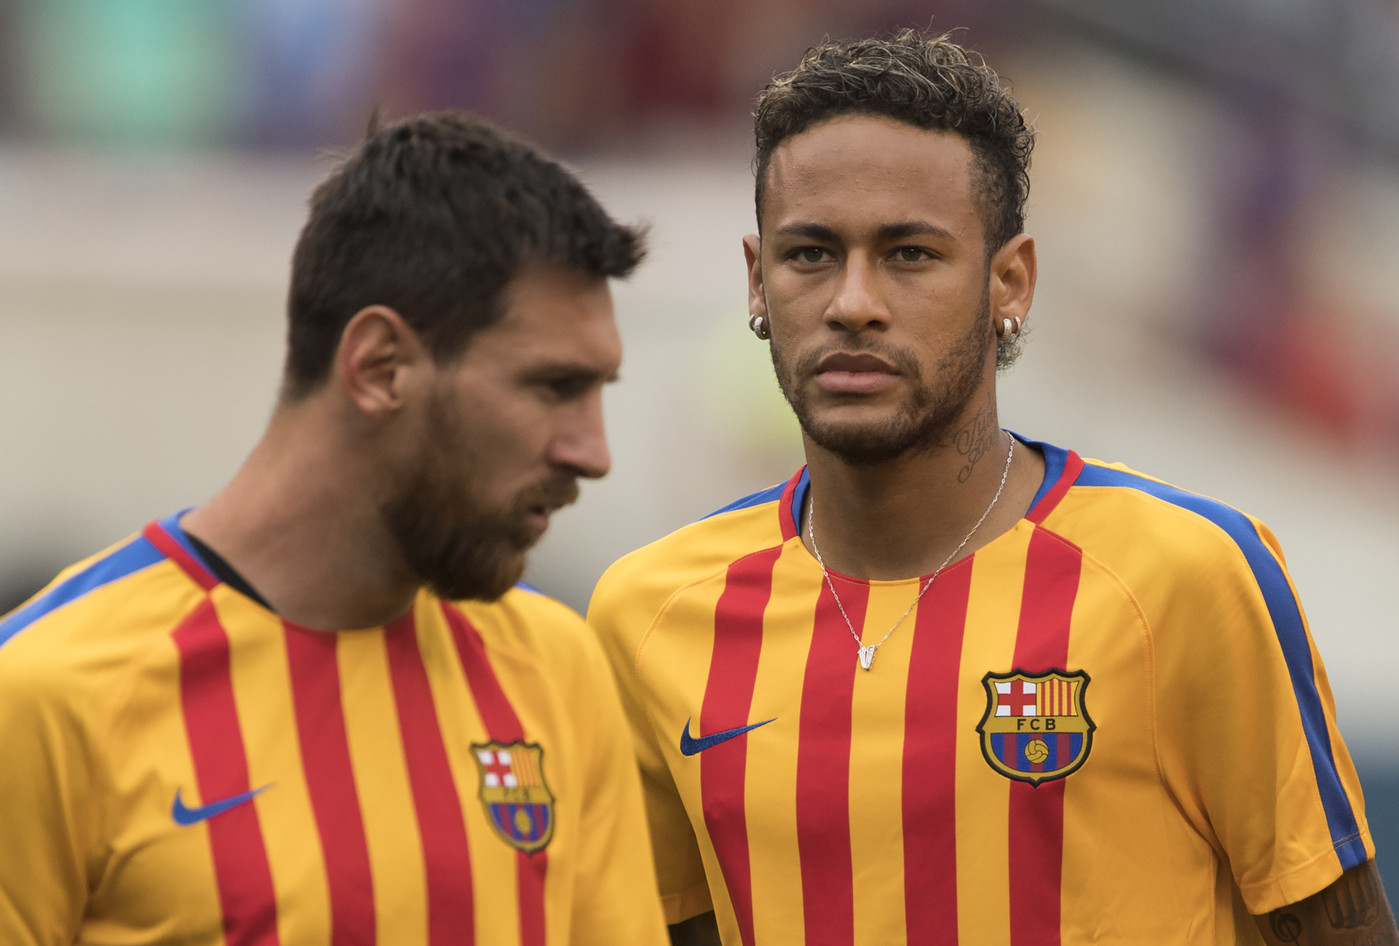 La raison pour laquelle Messi souhaite absolument le retour de Neymar selon Fabregas